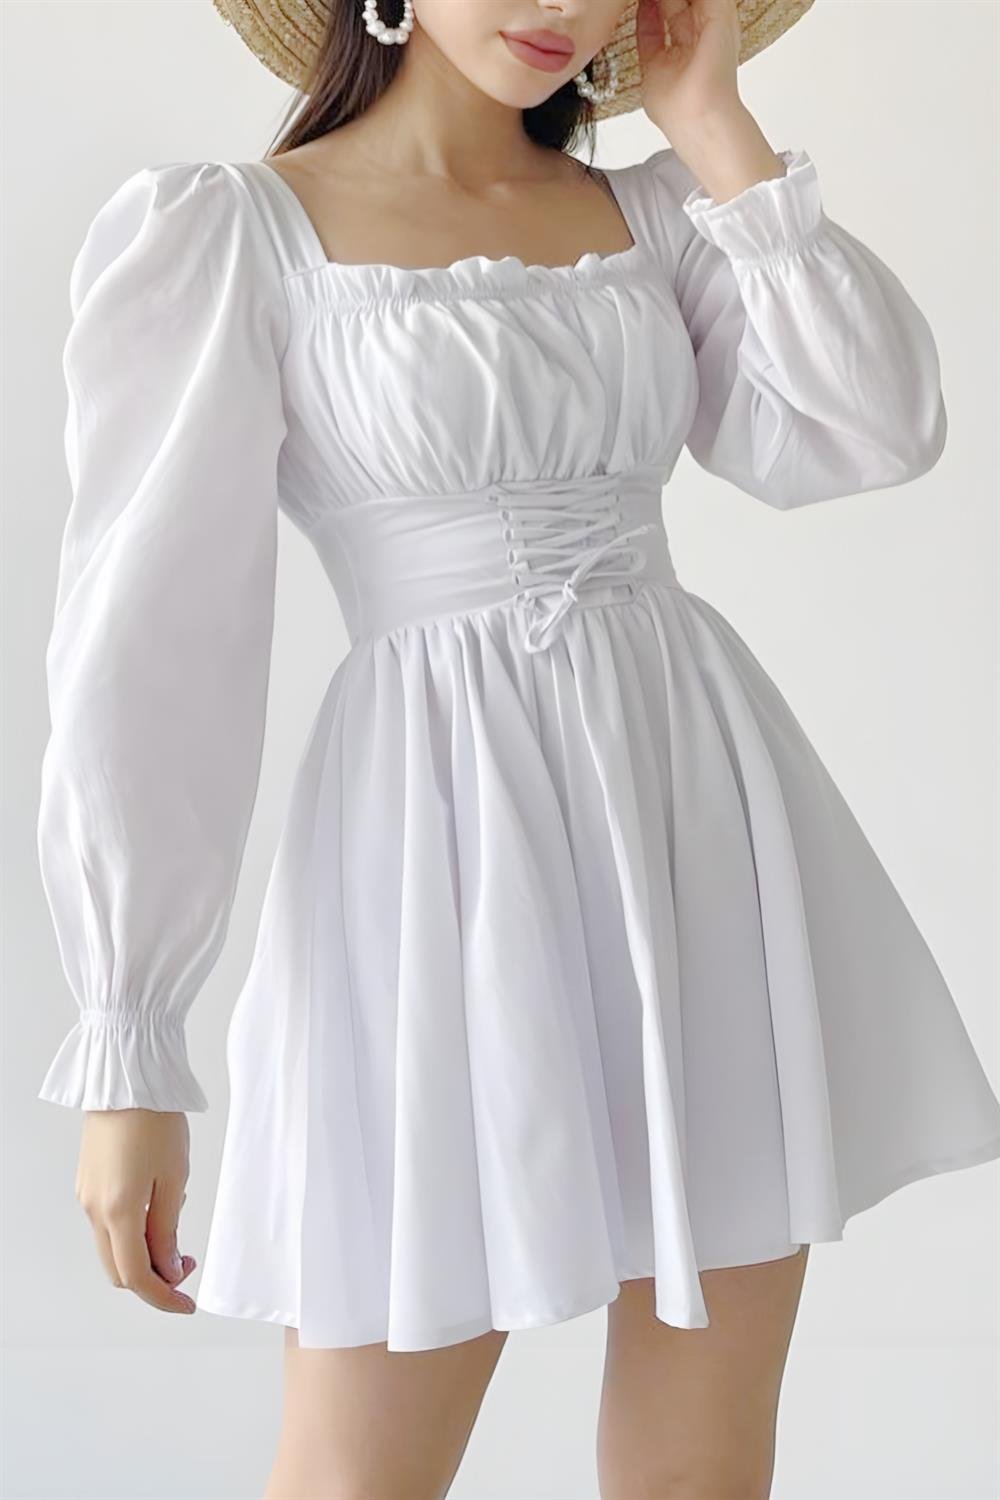 Vintage Kare Yaka Mini Elbise Ürününü Hemen İncele